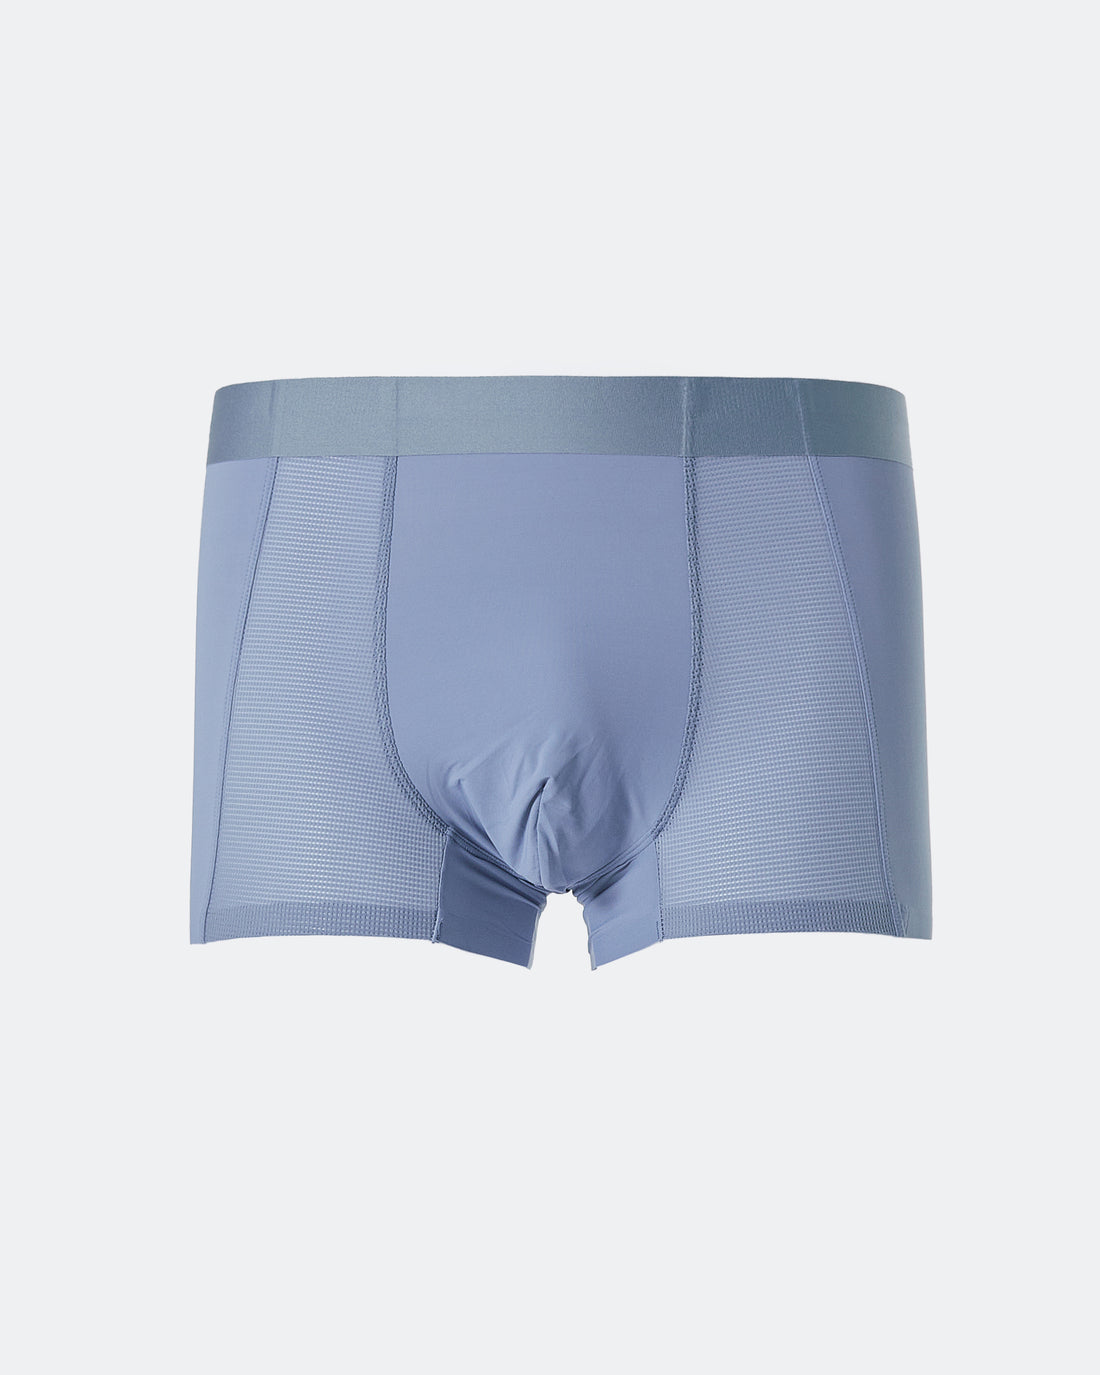 CK Soft Mesh Men Blue Underwear 6.90